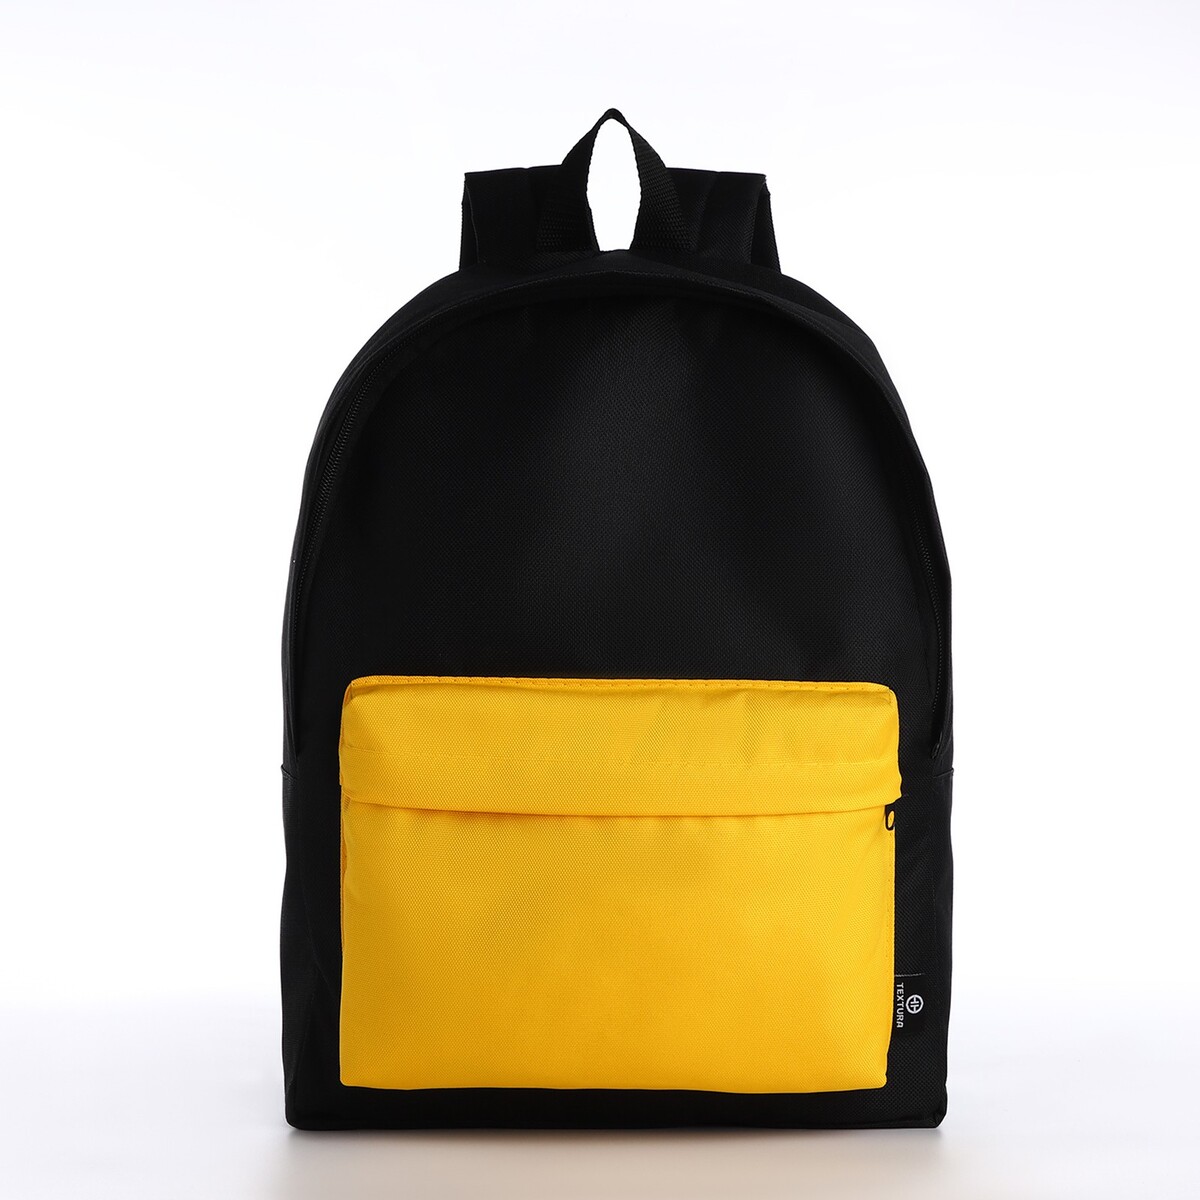 Спортивный рюкзак textura, 20 литров, цвет черный/желтый рюкзак rockbros 20 литров rb h9 bk